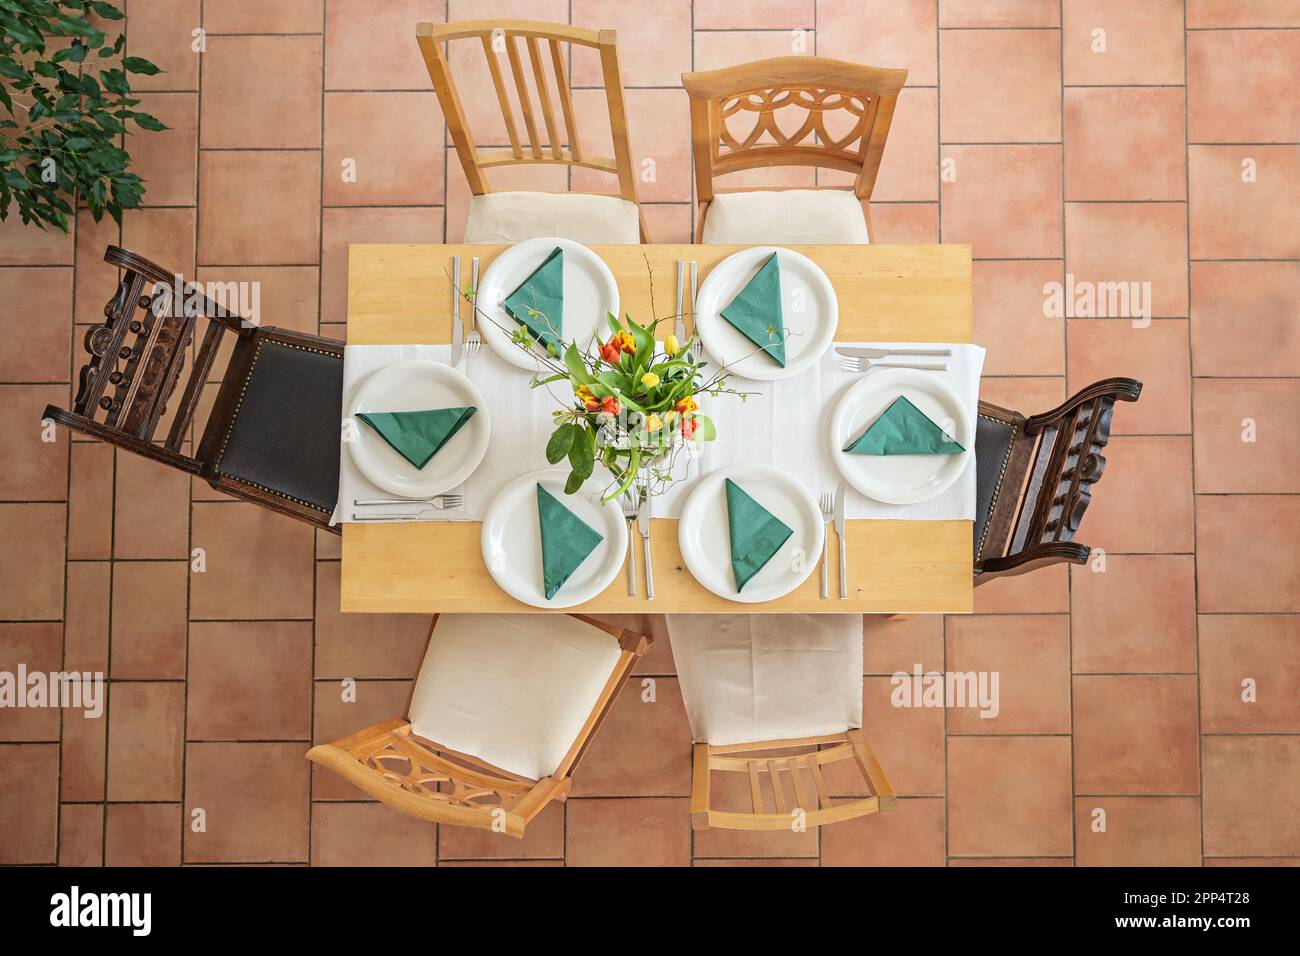 Tavolo in legno con disposizione per sei con piatti bianchi, posate, tovaglioli verdi e bouquet di fiori, diverse sedie d'epoca su terracotta piastrellata Foto Stock